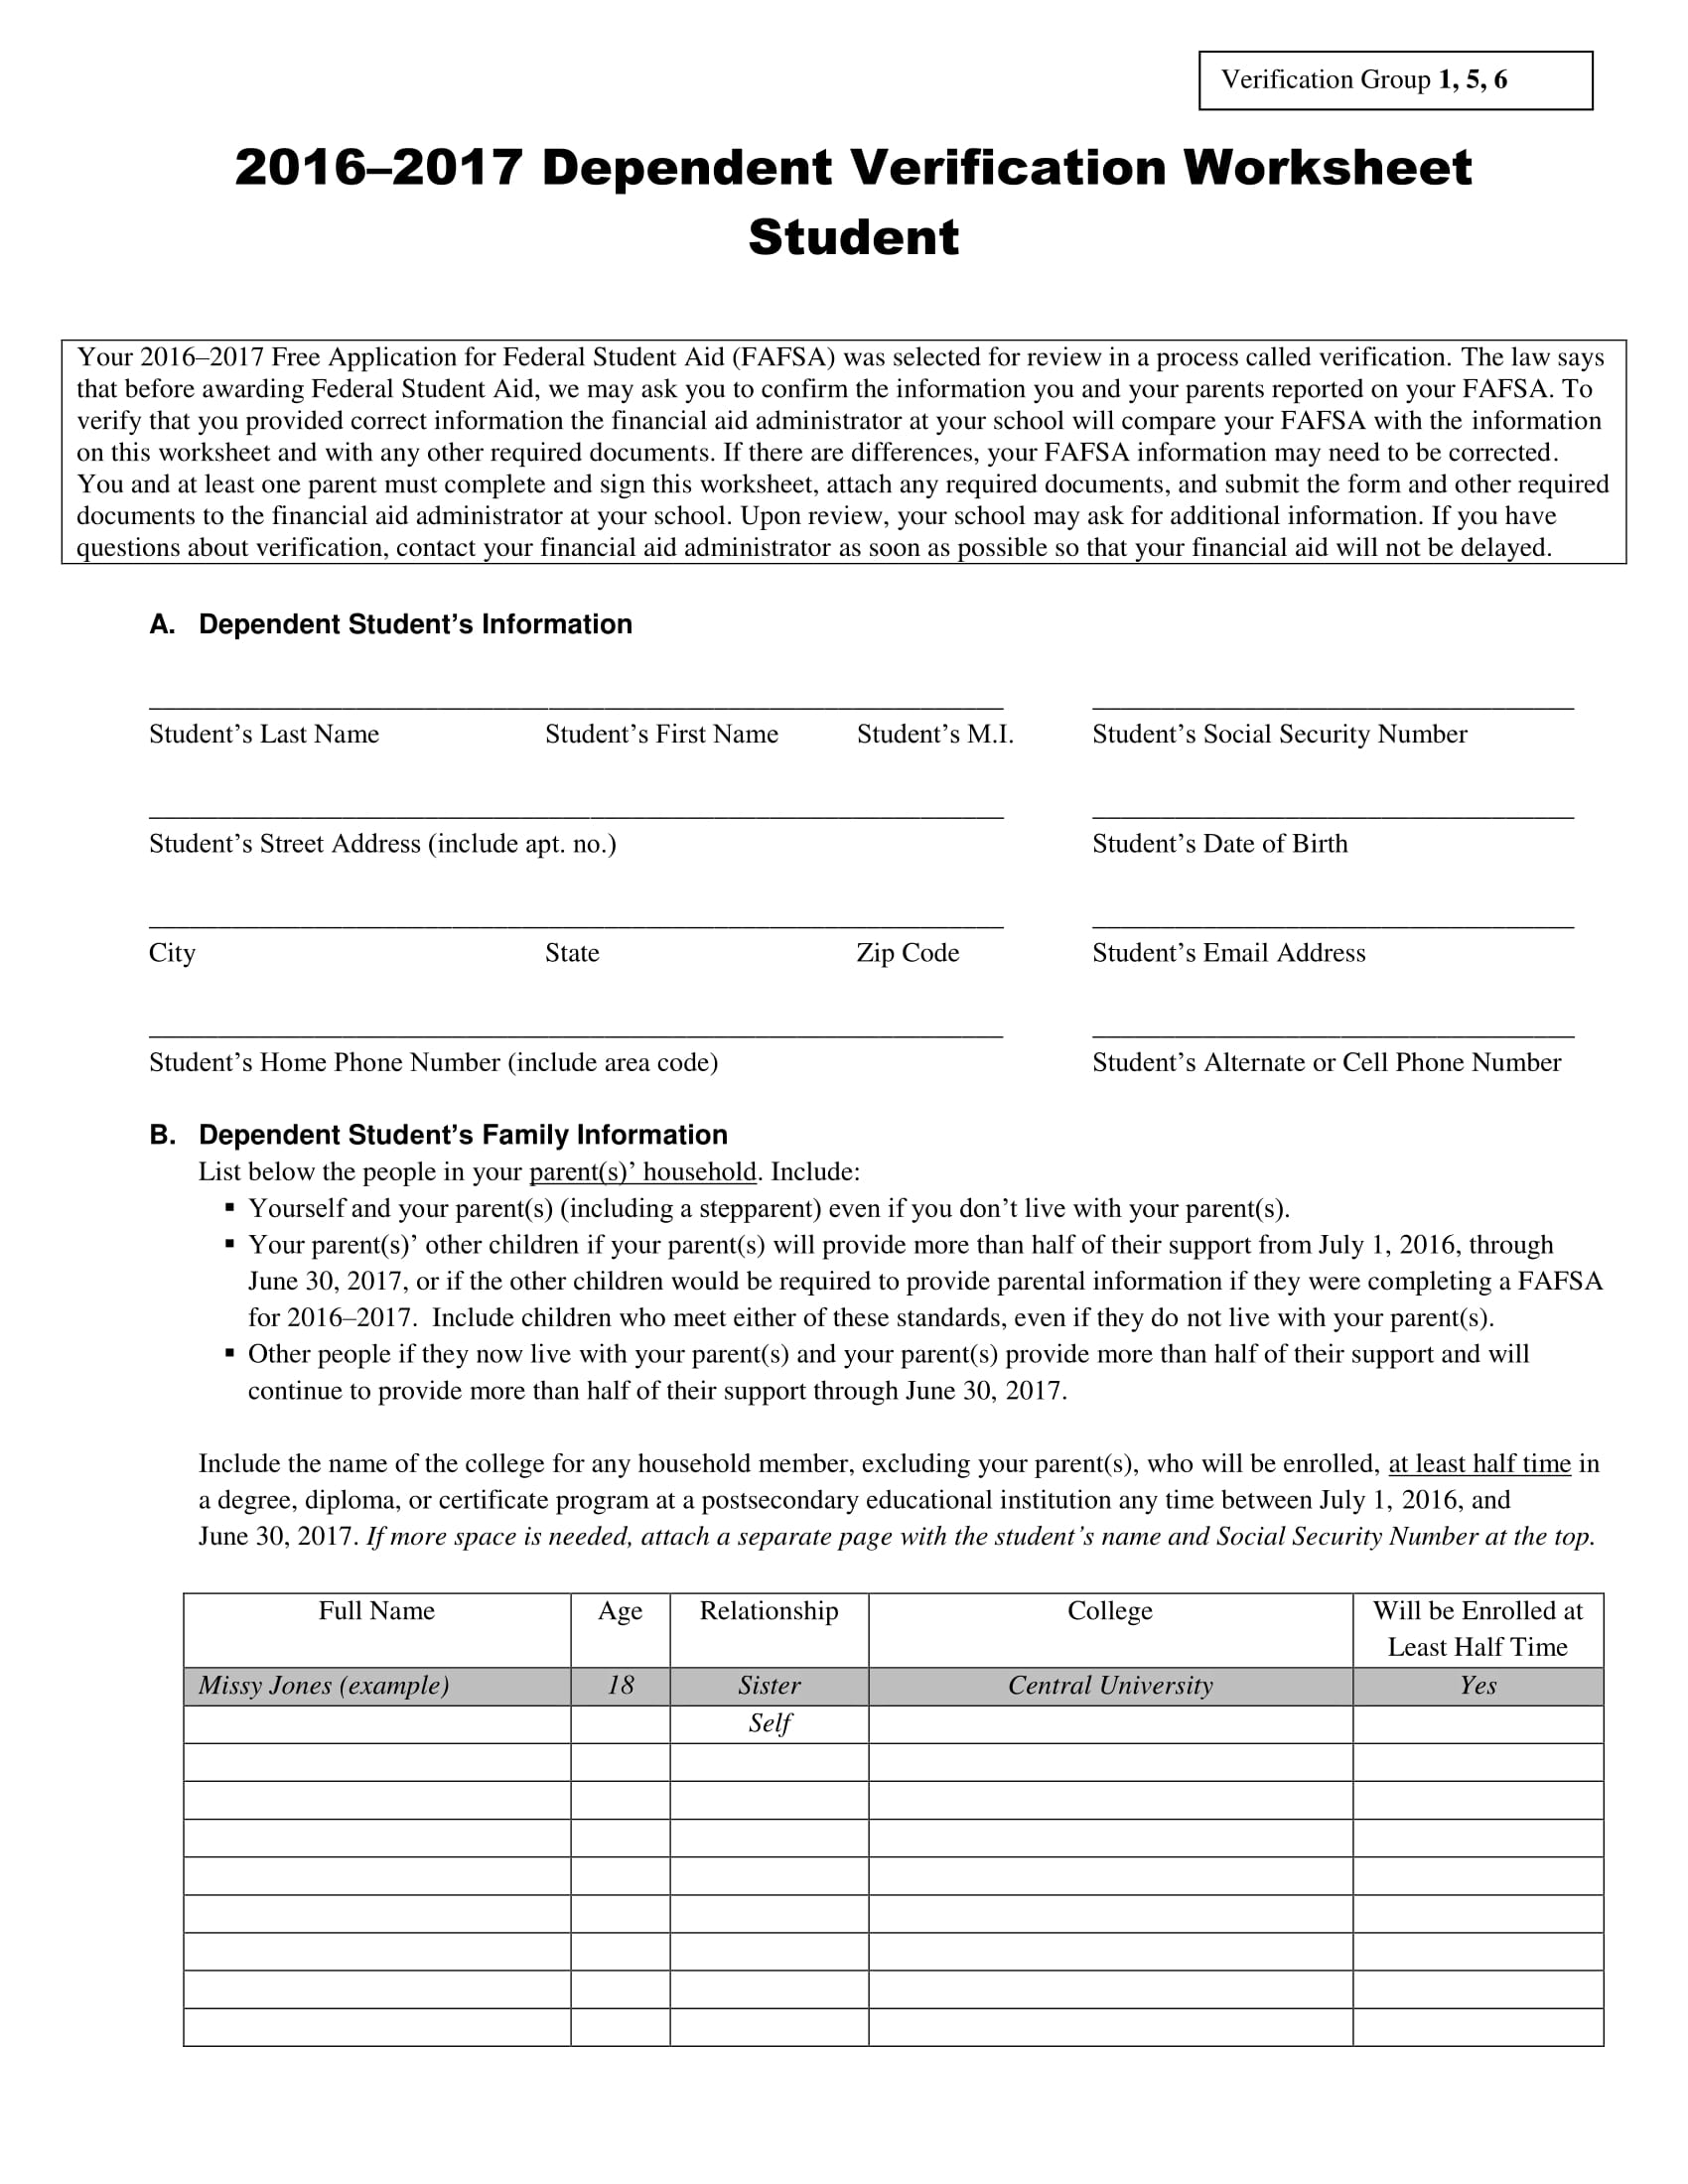 2016 2017 dependent verification form worksheet 1